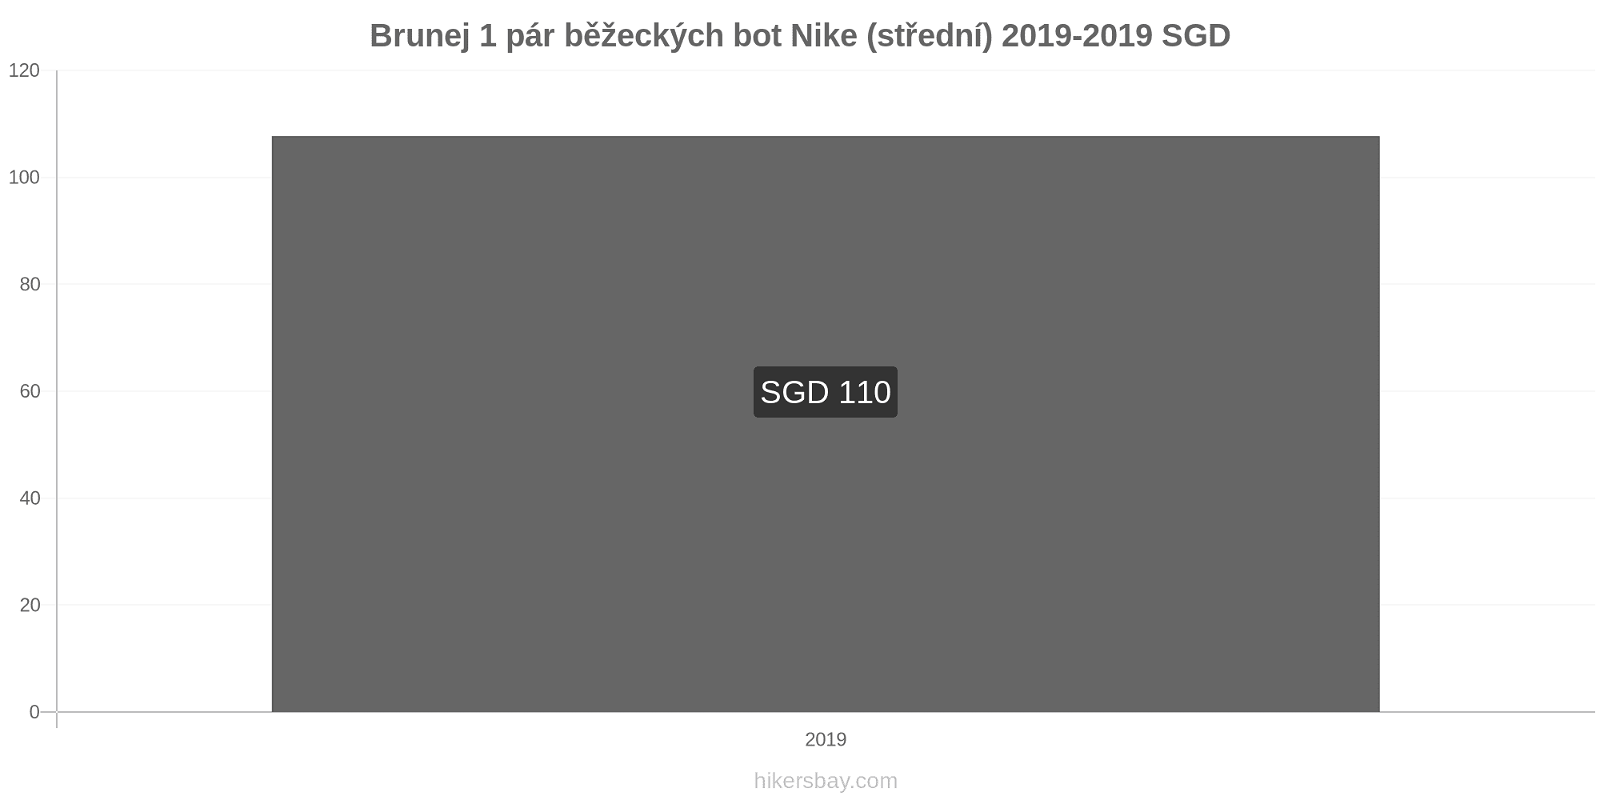 Brunej změny cen 1 pár běžeckých bot Nike (střední) hikersbay.com